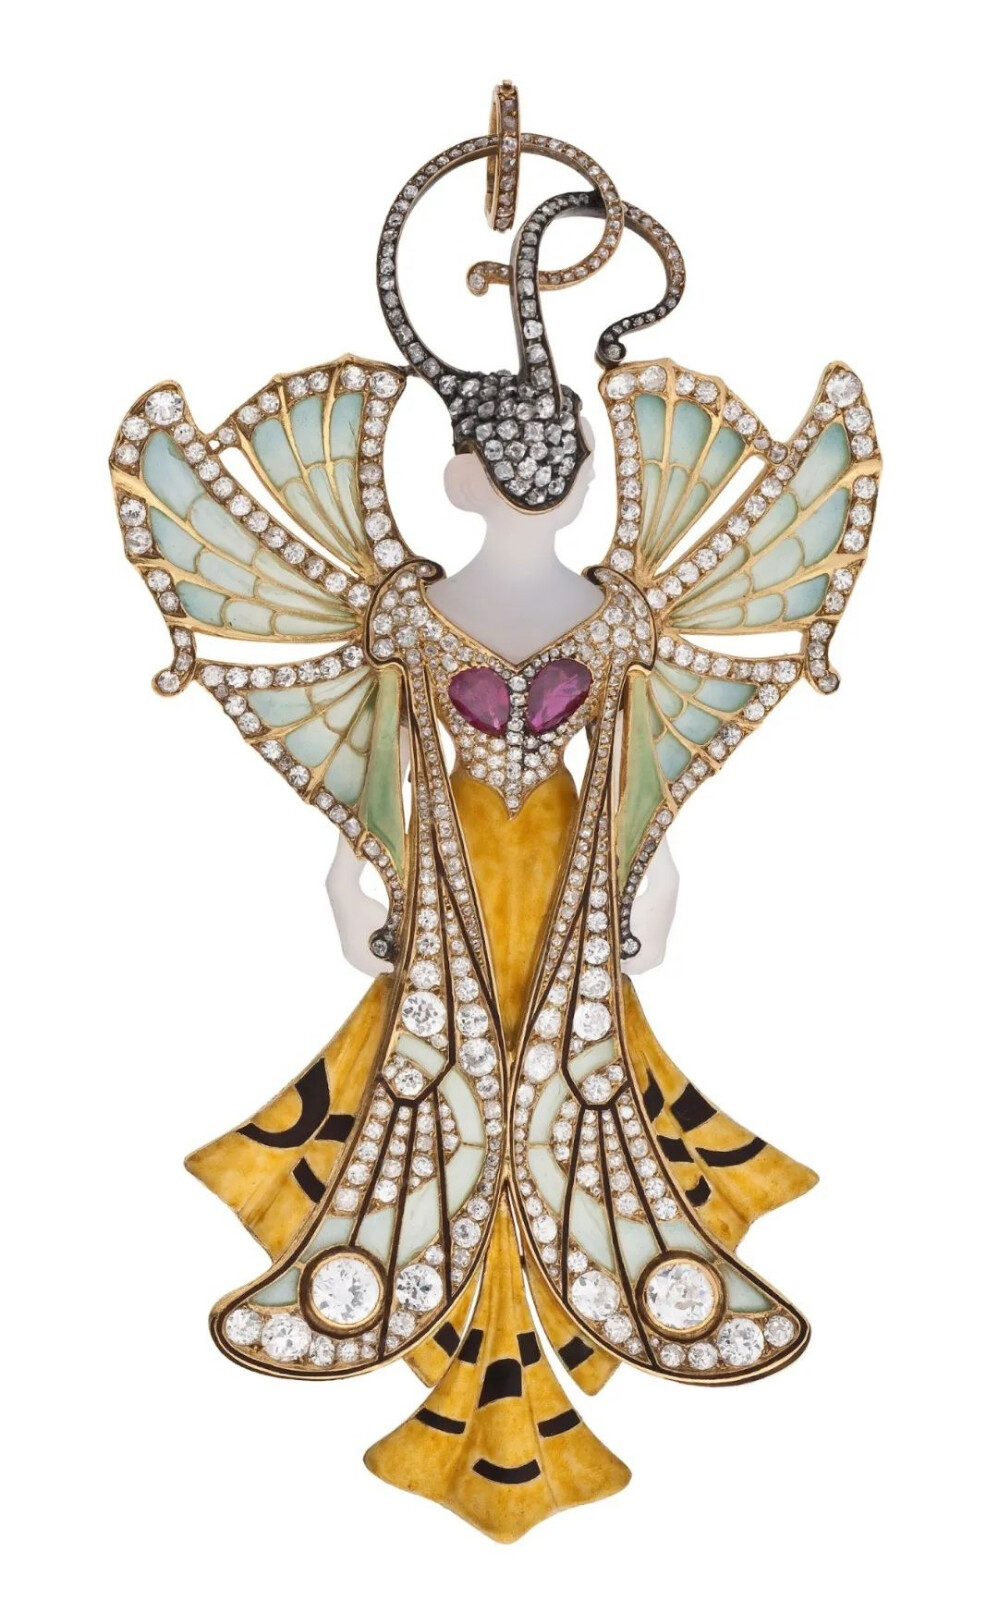 新艺术时期法国珠宝设计师亨利·维佛出品经典仙女胸针“Sylvia”就运用了空窗珐琅、玛瑙、红宝石和钻石打造，曾是1900年巴黎世博会的知名作品/巴黎装饰艺术博物馆藏